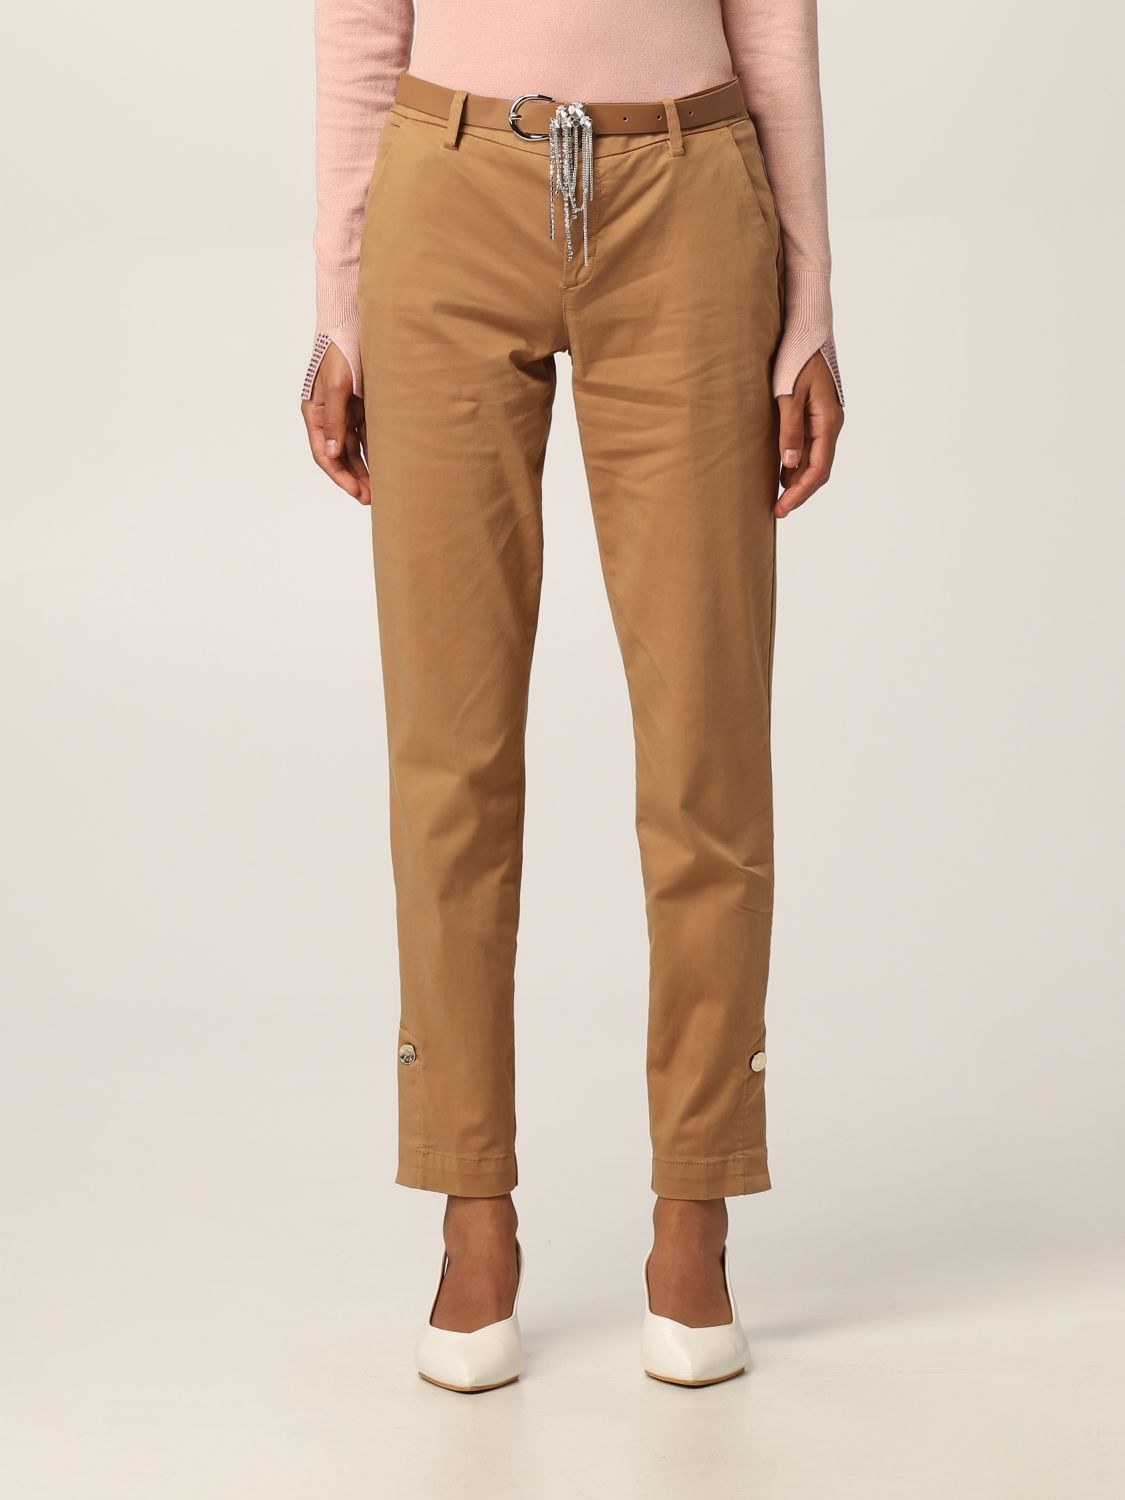 Pantalone in cotone stretch Giglio.com Donna Abbigliamento Pantaloni e jeans Pantaloni Pantaloni stretch 